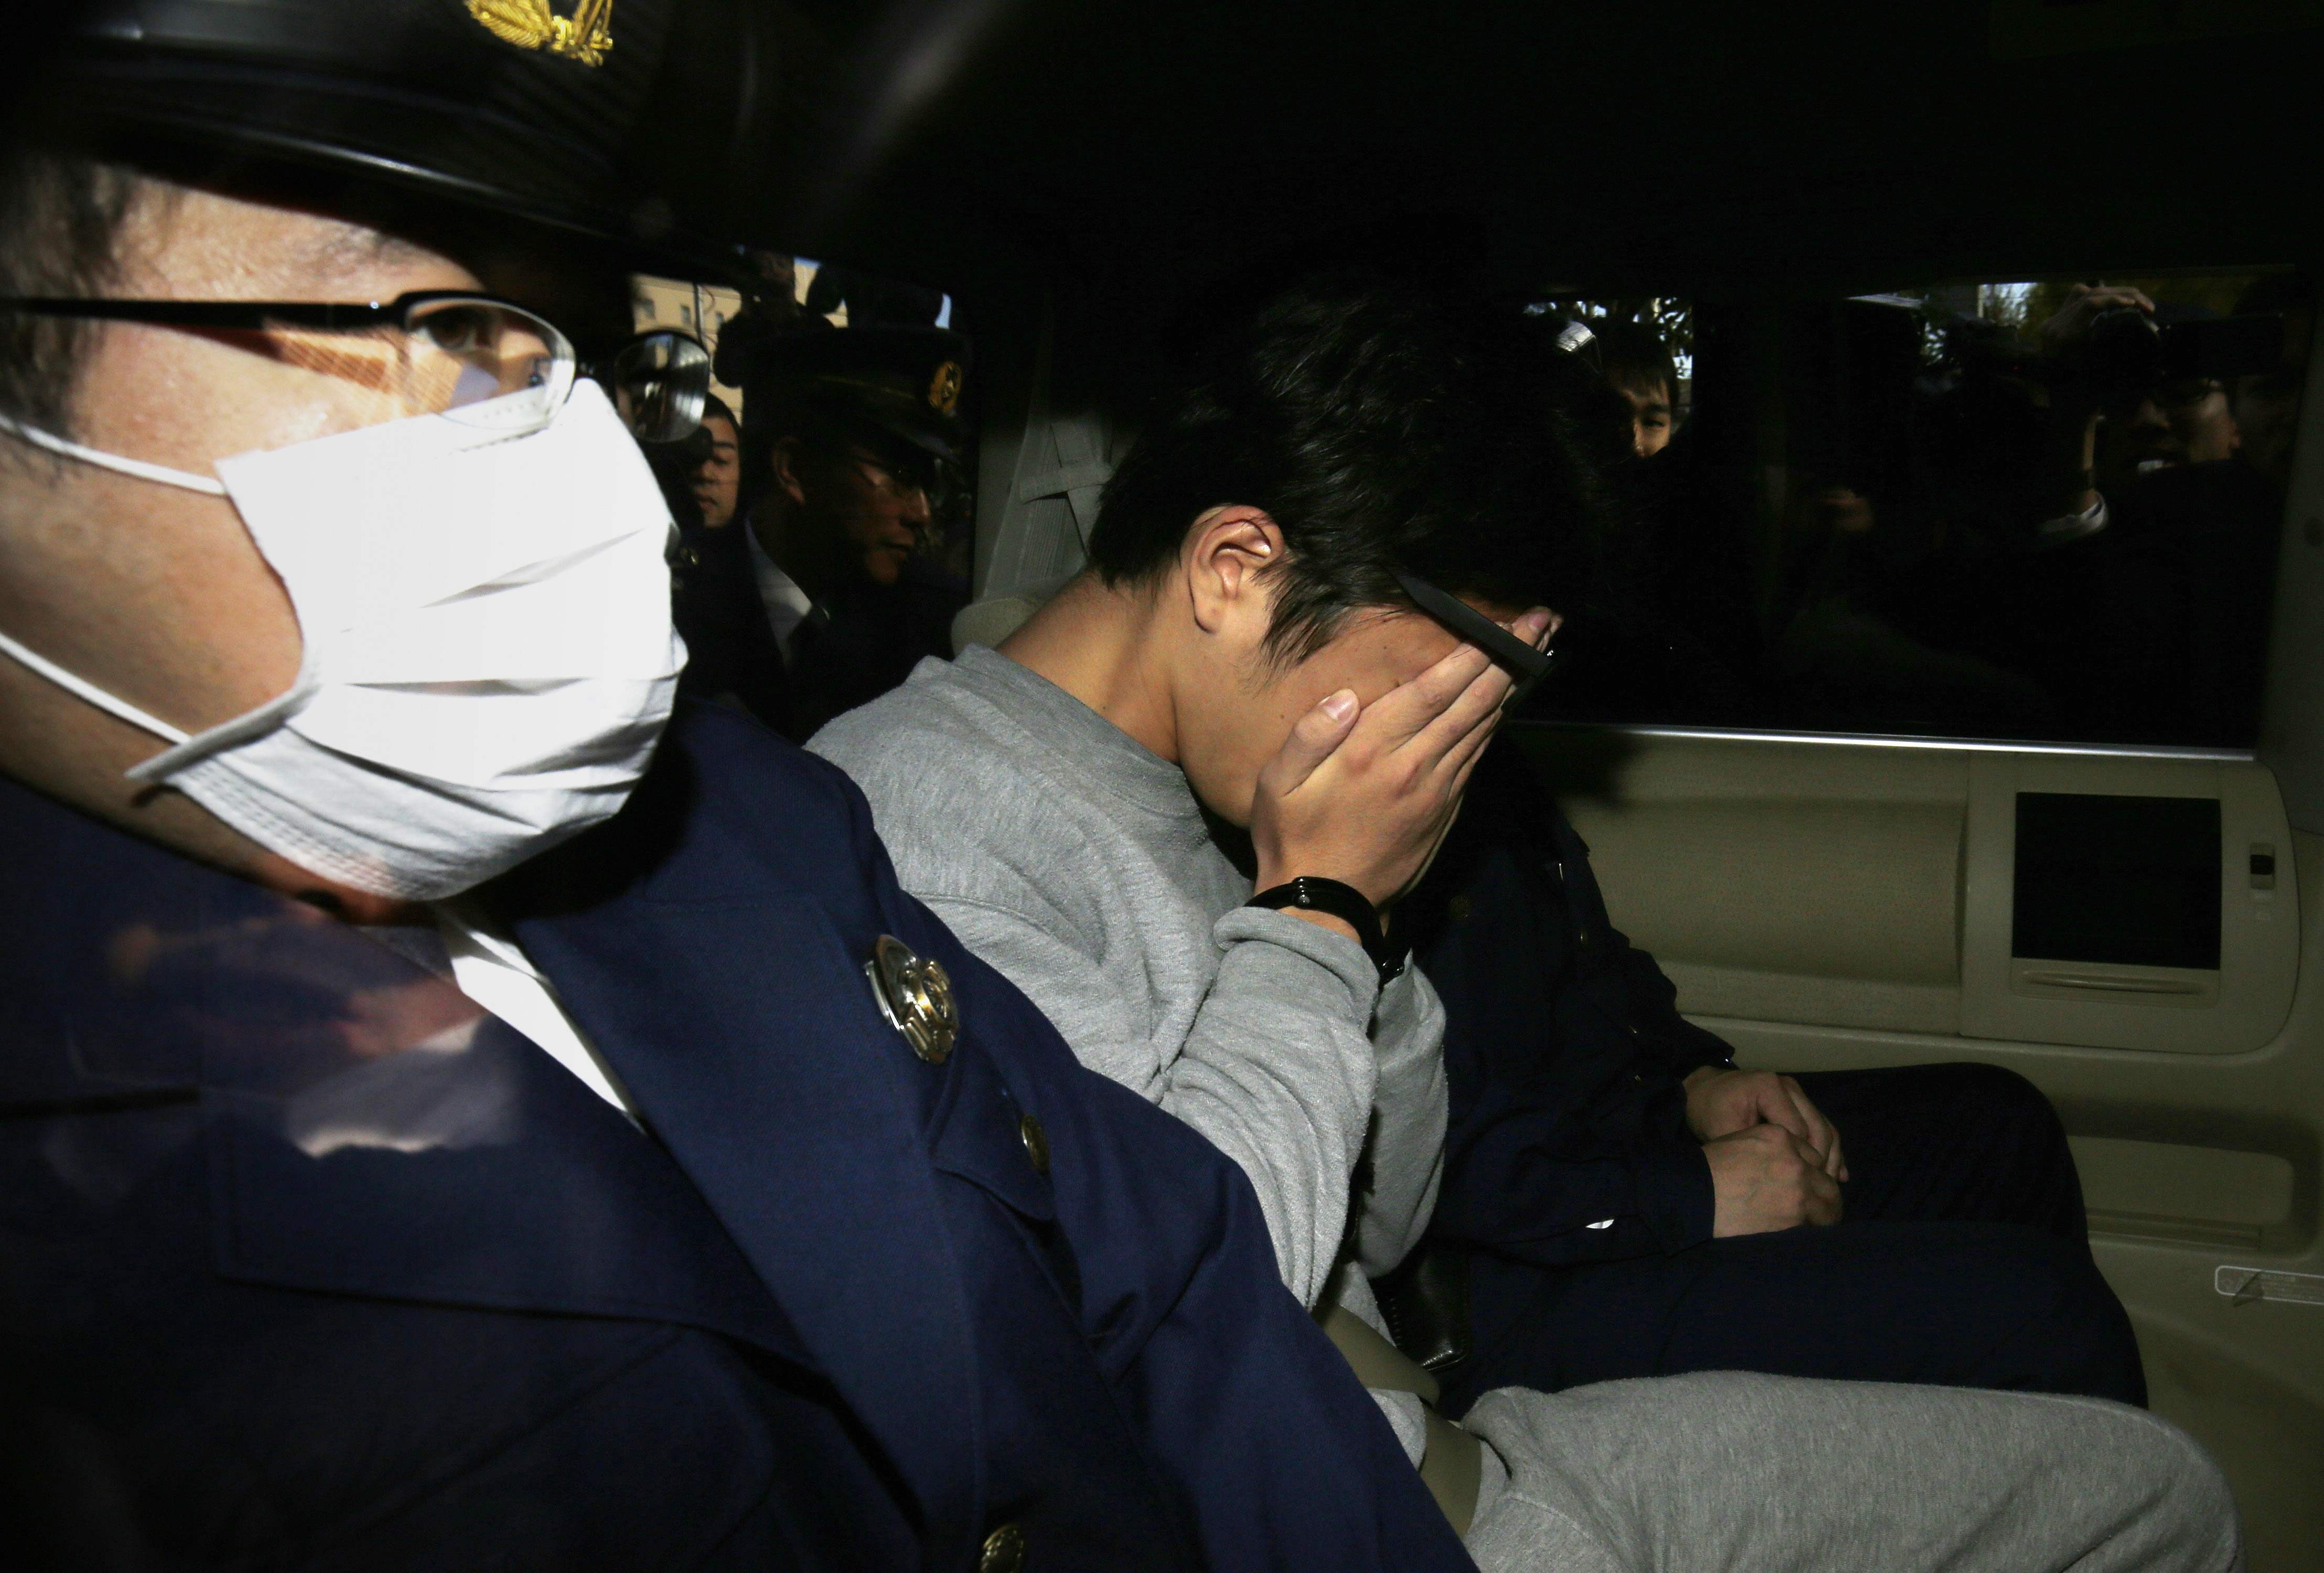 日本神奈川县27岁男子白石隆浩涉嫌杀害9人,他被移送时低头遮脸.